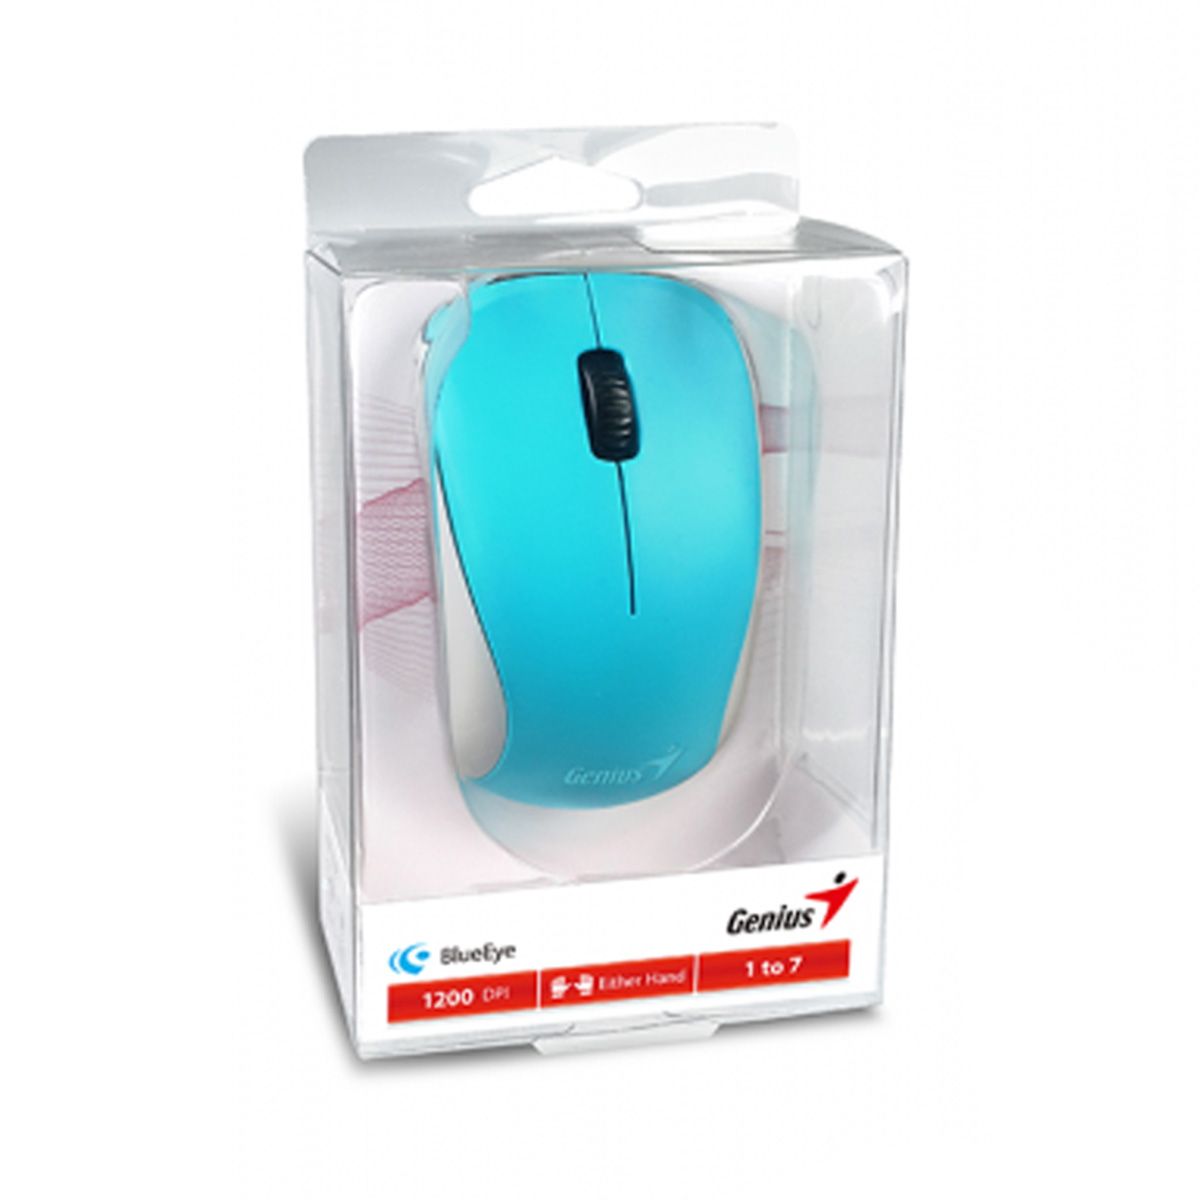 GENIUS เม้าส์ไร้สาย Wireless Mouse BlueEye NX-7000 (Blue)